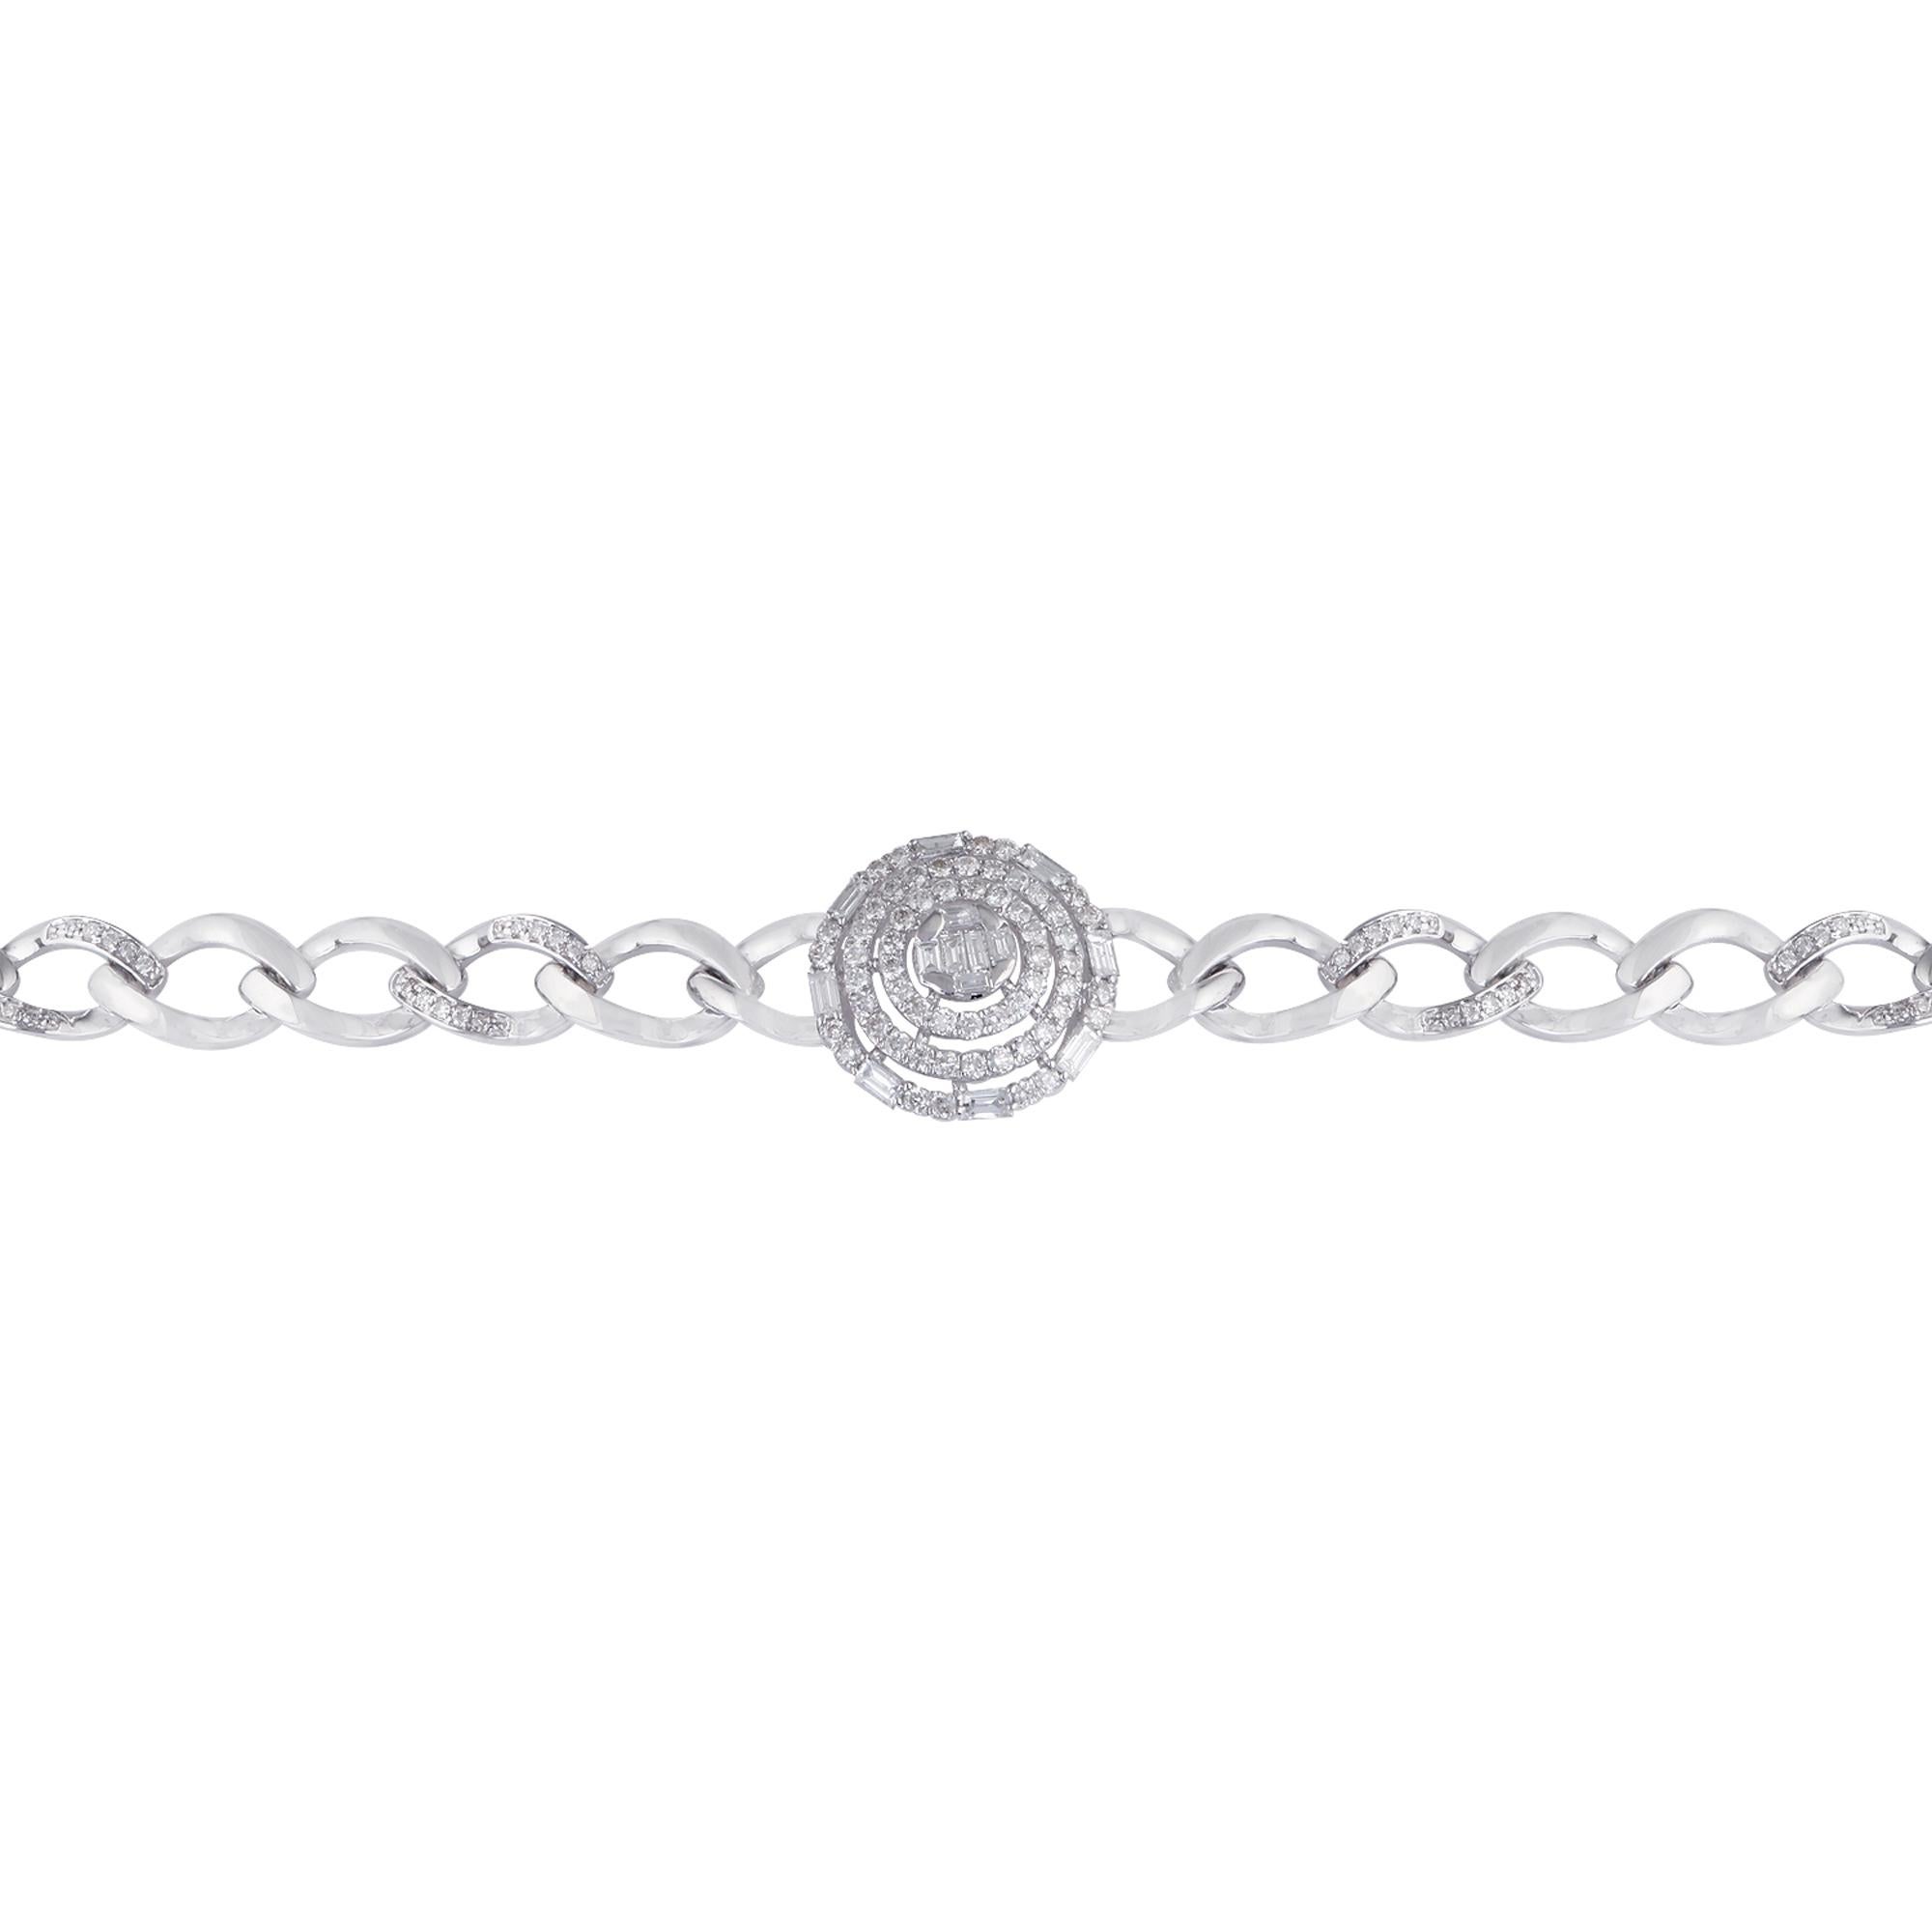 Code de l'article :- CN-26243 (14k)
Poids brut :- 10.72 gm
Or blanc massif 14k Poids :- 10.50 gm
Poids du diamant naturel :- 1.10 Ct. ( DIAMANT MOYEN DE PURETÉ SI1-SI2 ET DE COULEUR H-I )
Longueur du bracelet :- 7 pouces

✦